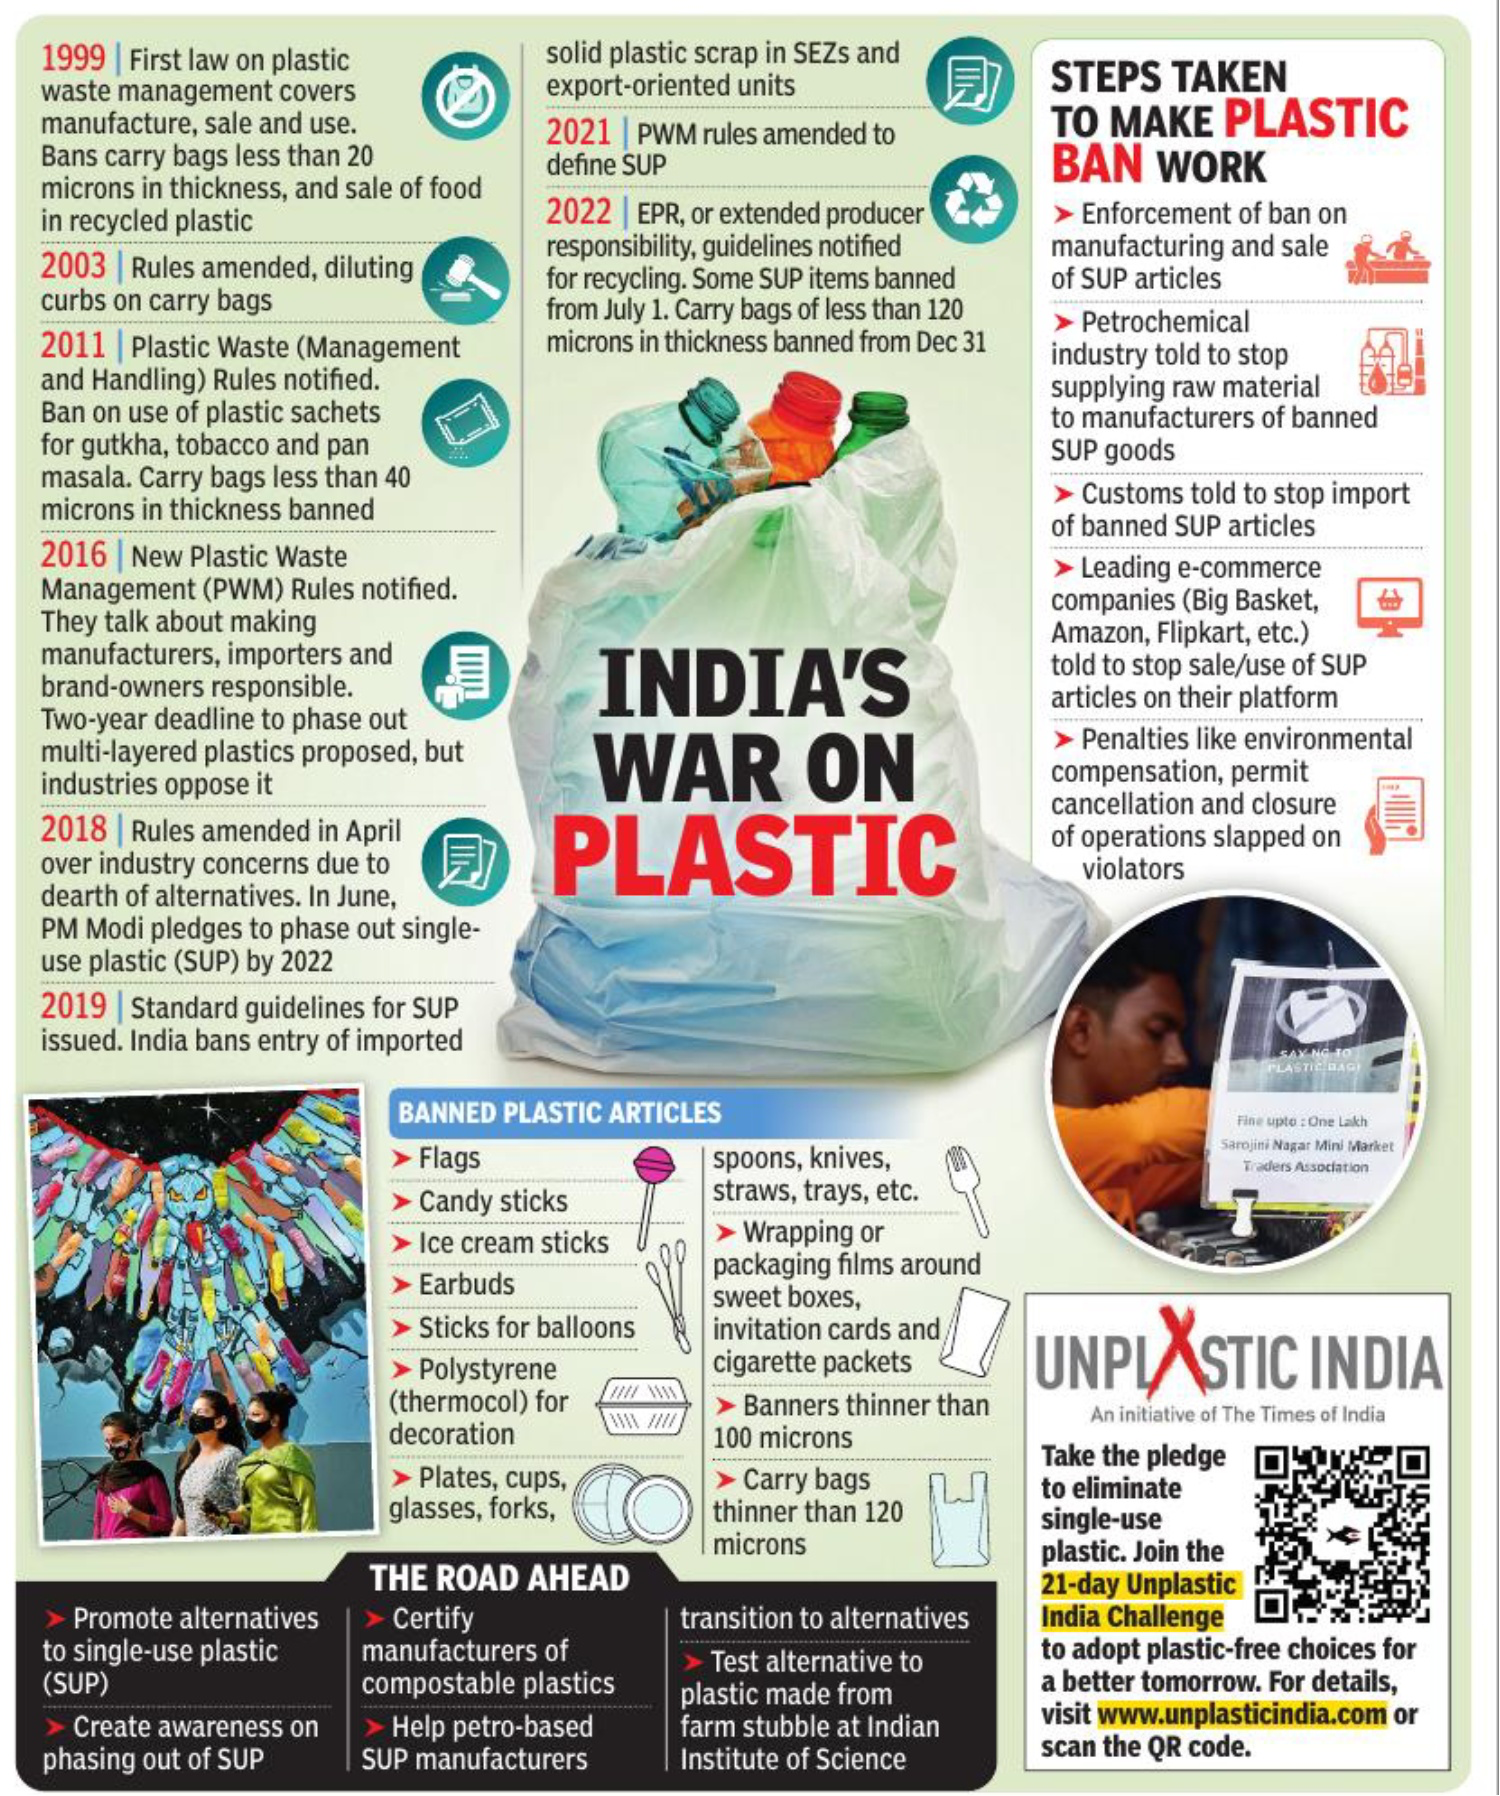 Plastic ban in India